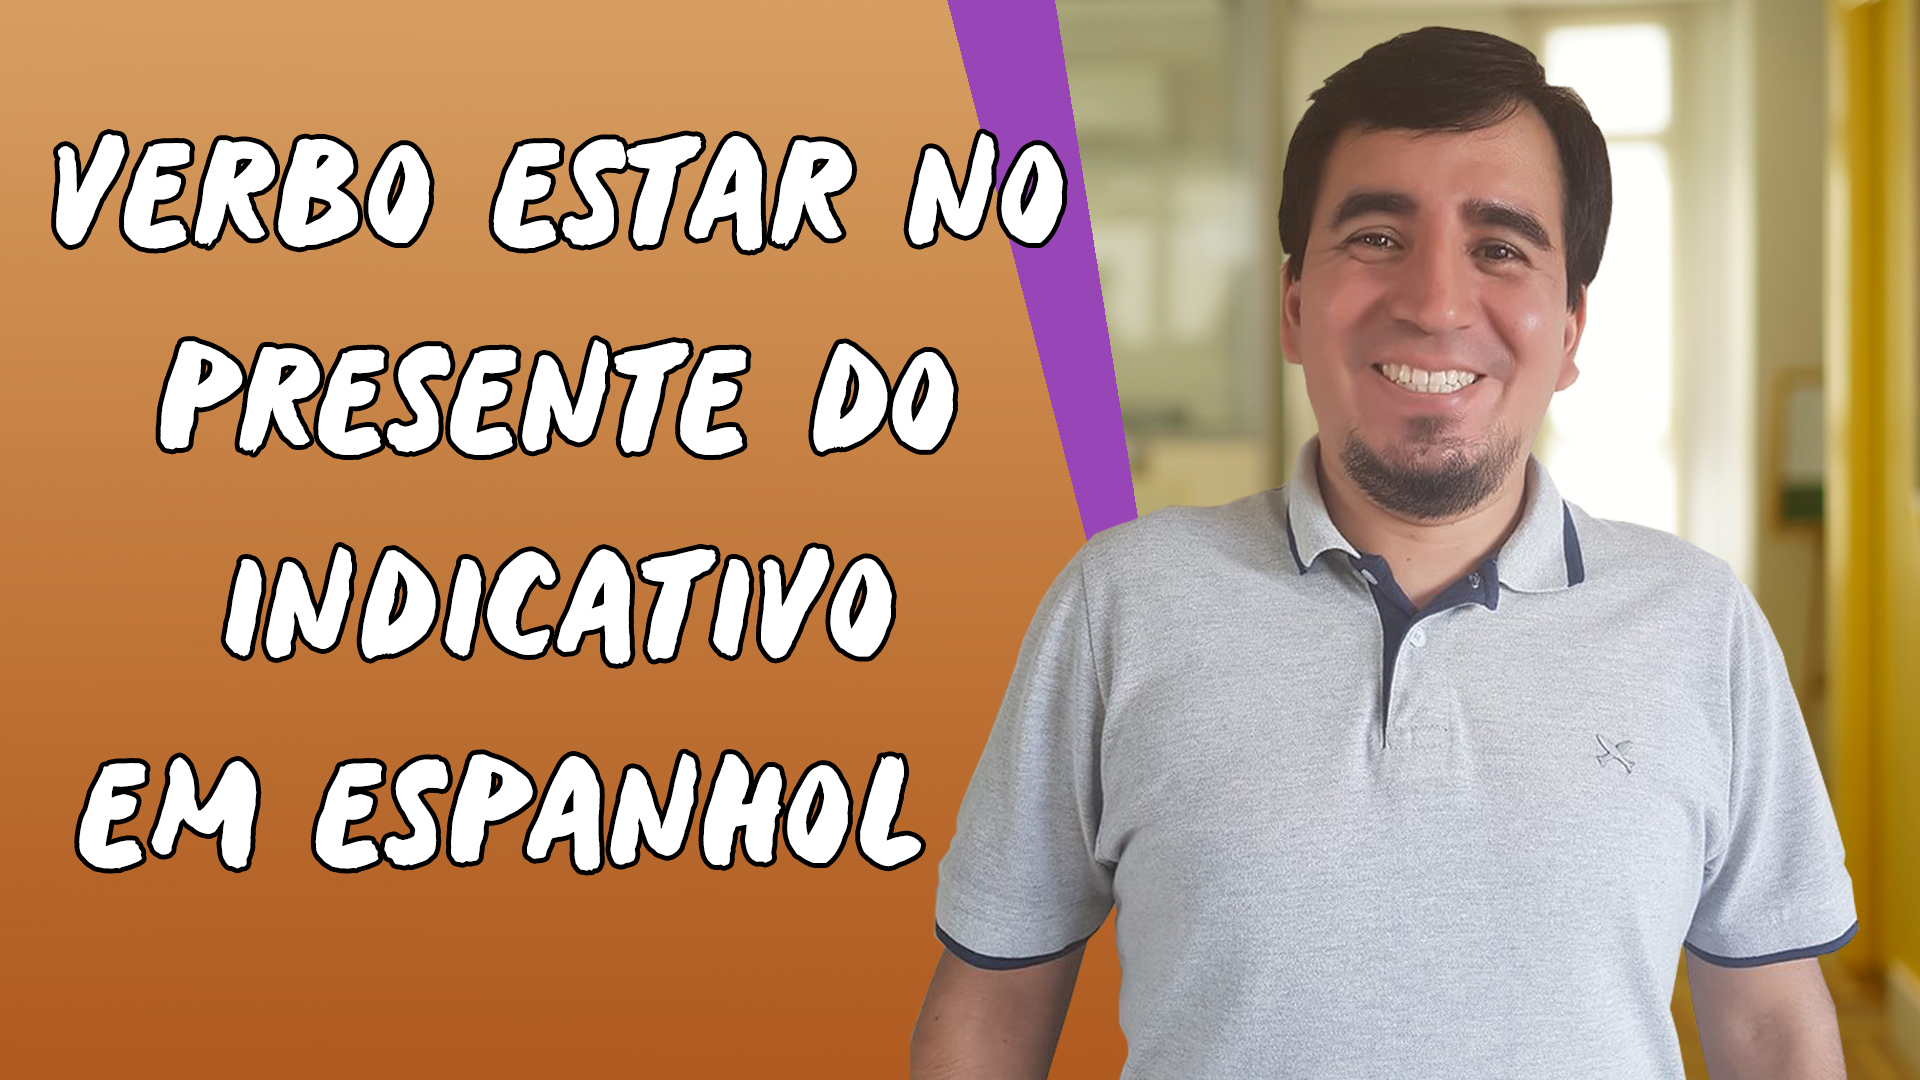 "Verbo Estar no Presente do Indicativo em Espanhol" escrito sobre fundo laranja ao lado da imagem do professor